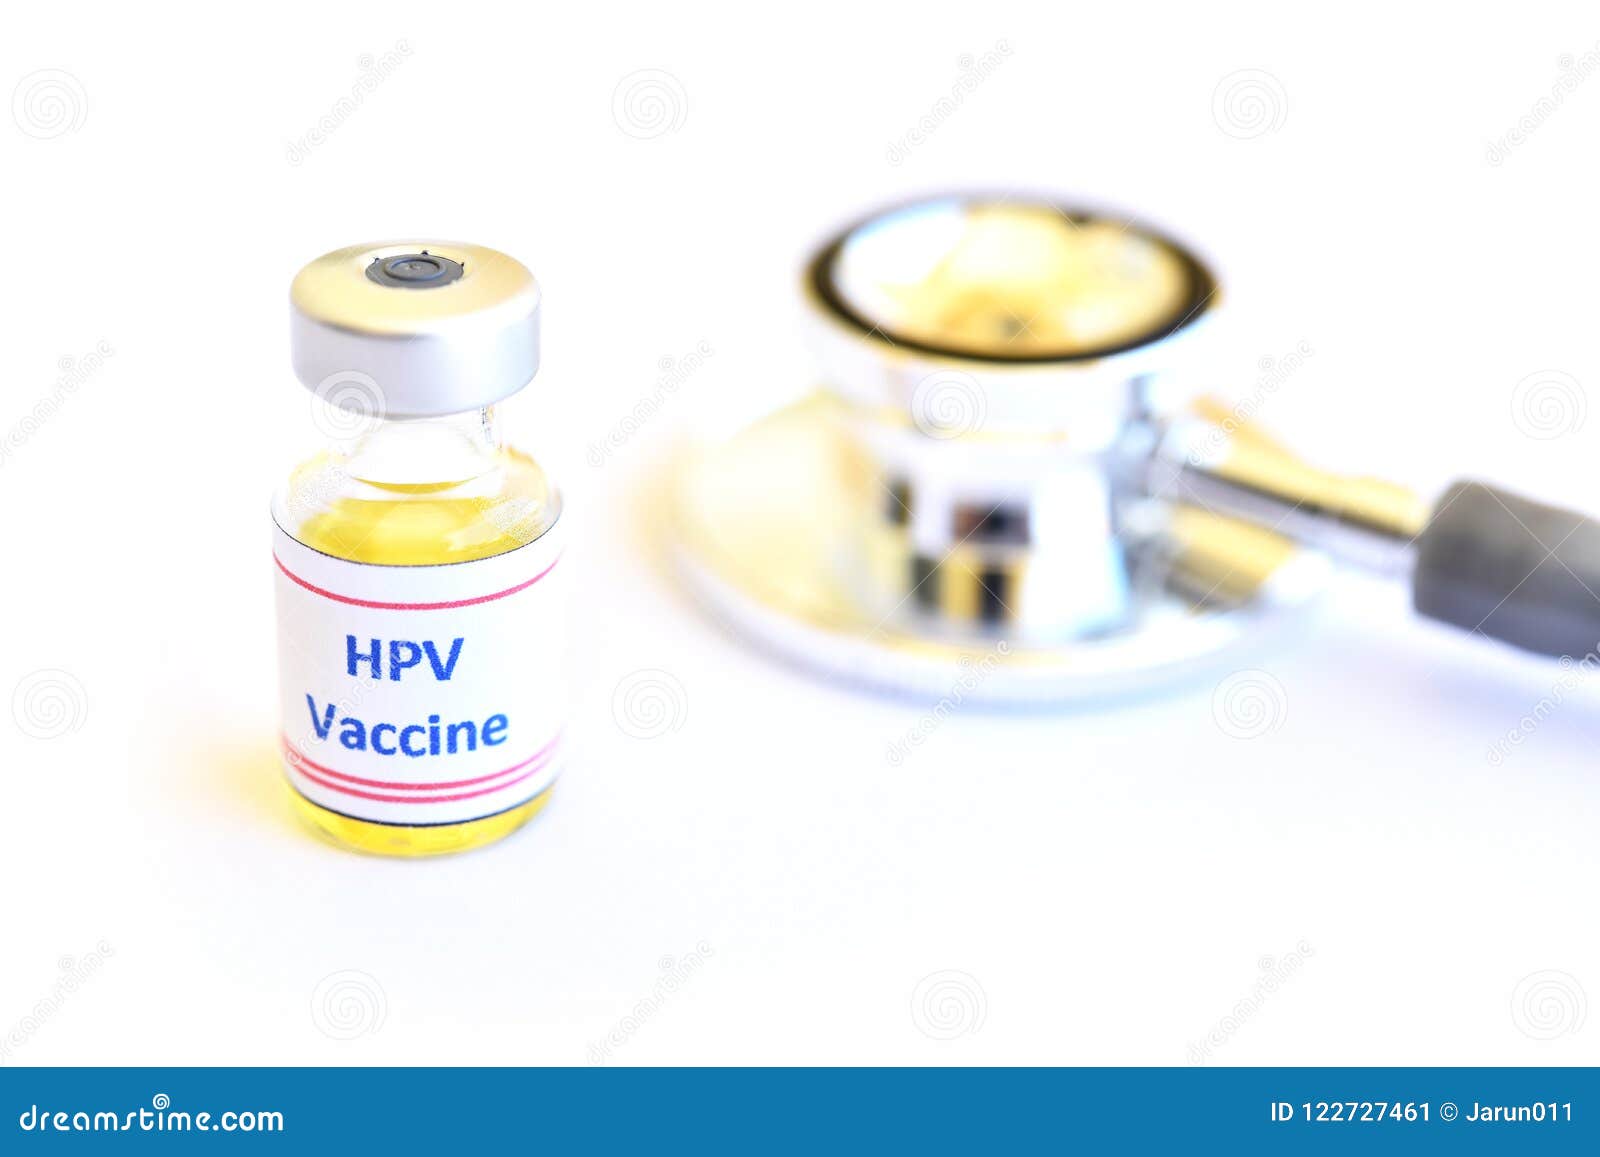 human papillomavirus vaccine hpv injection)